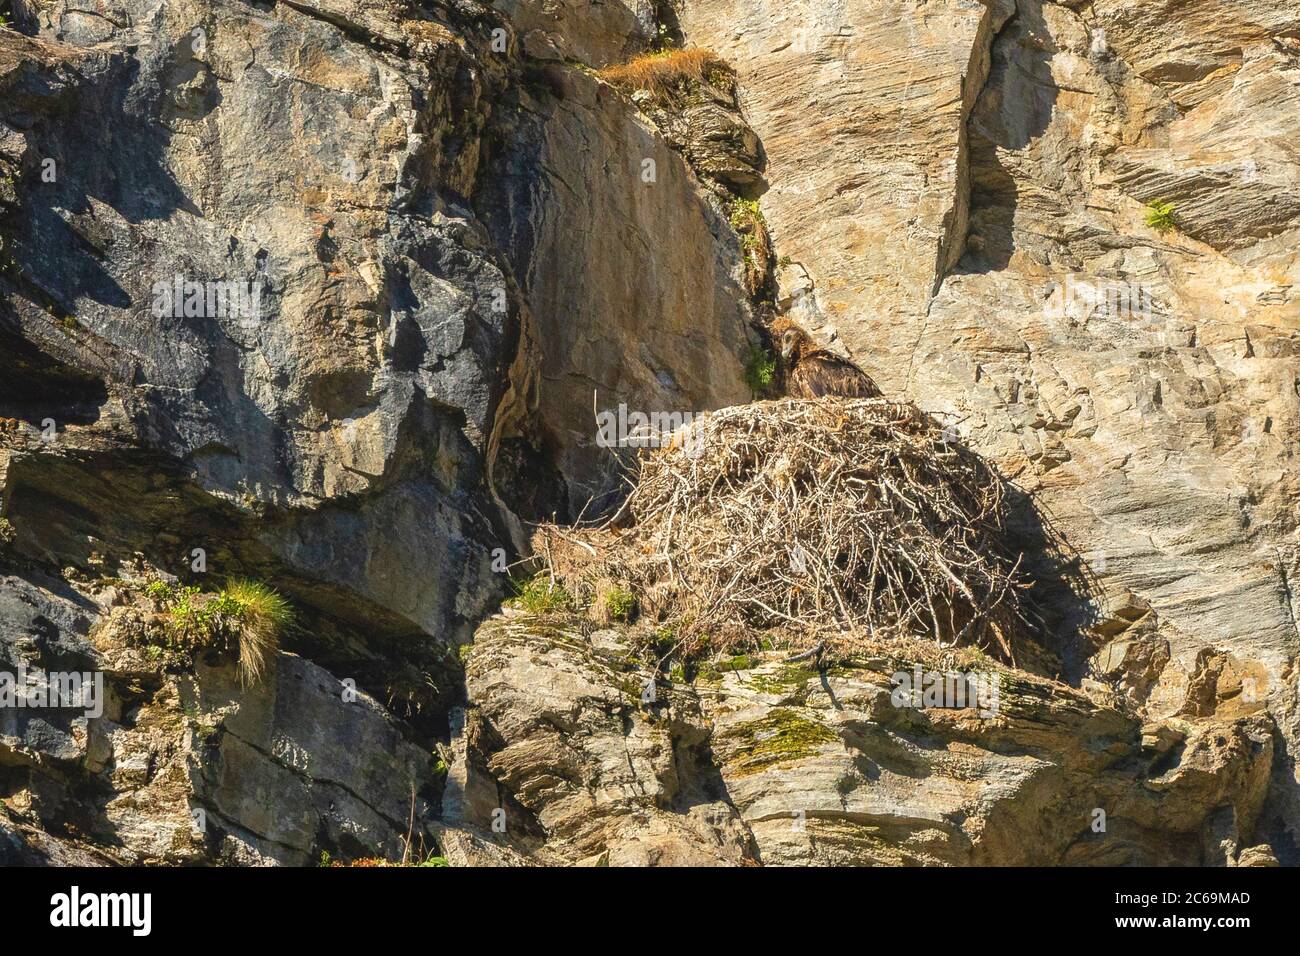 Lammergeier, la viticultura con barba (Gypaetus barbatus), nido con anidamiento en una cara de roca, Austria, Carintia, Hohe Tauern Parque Nacional Foto de stock